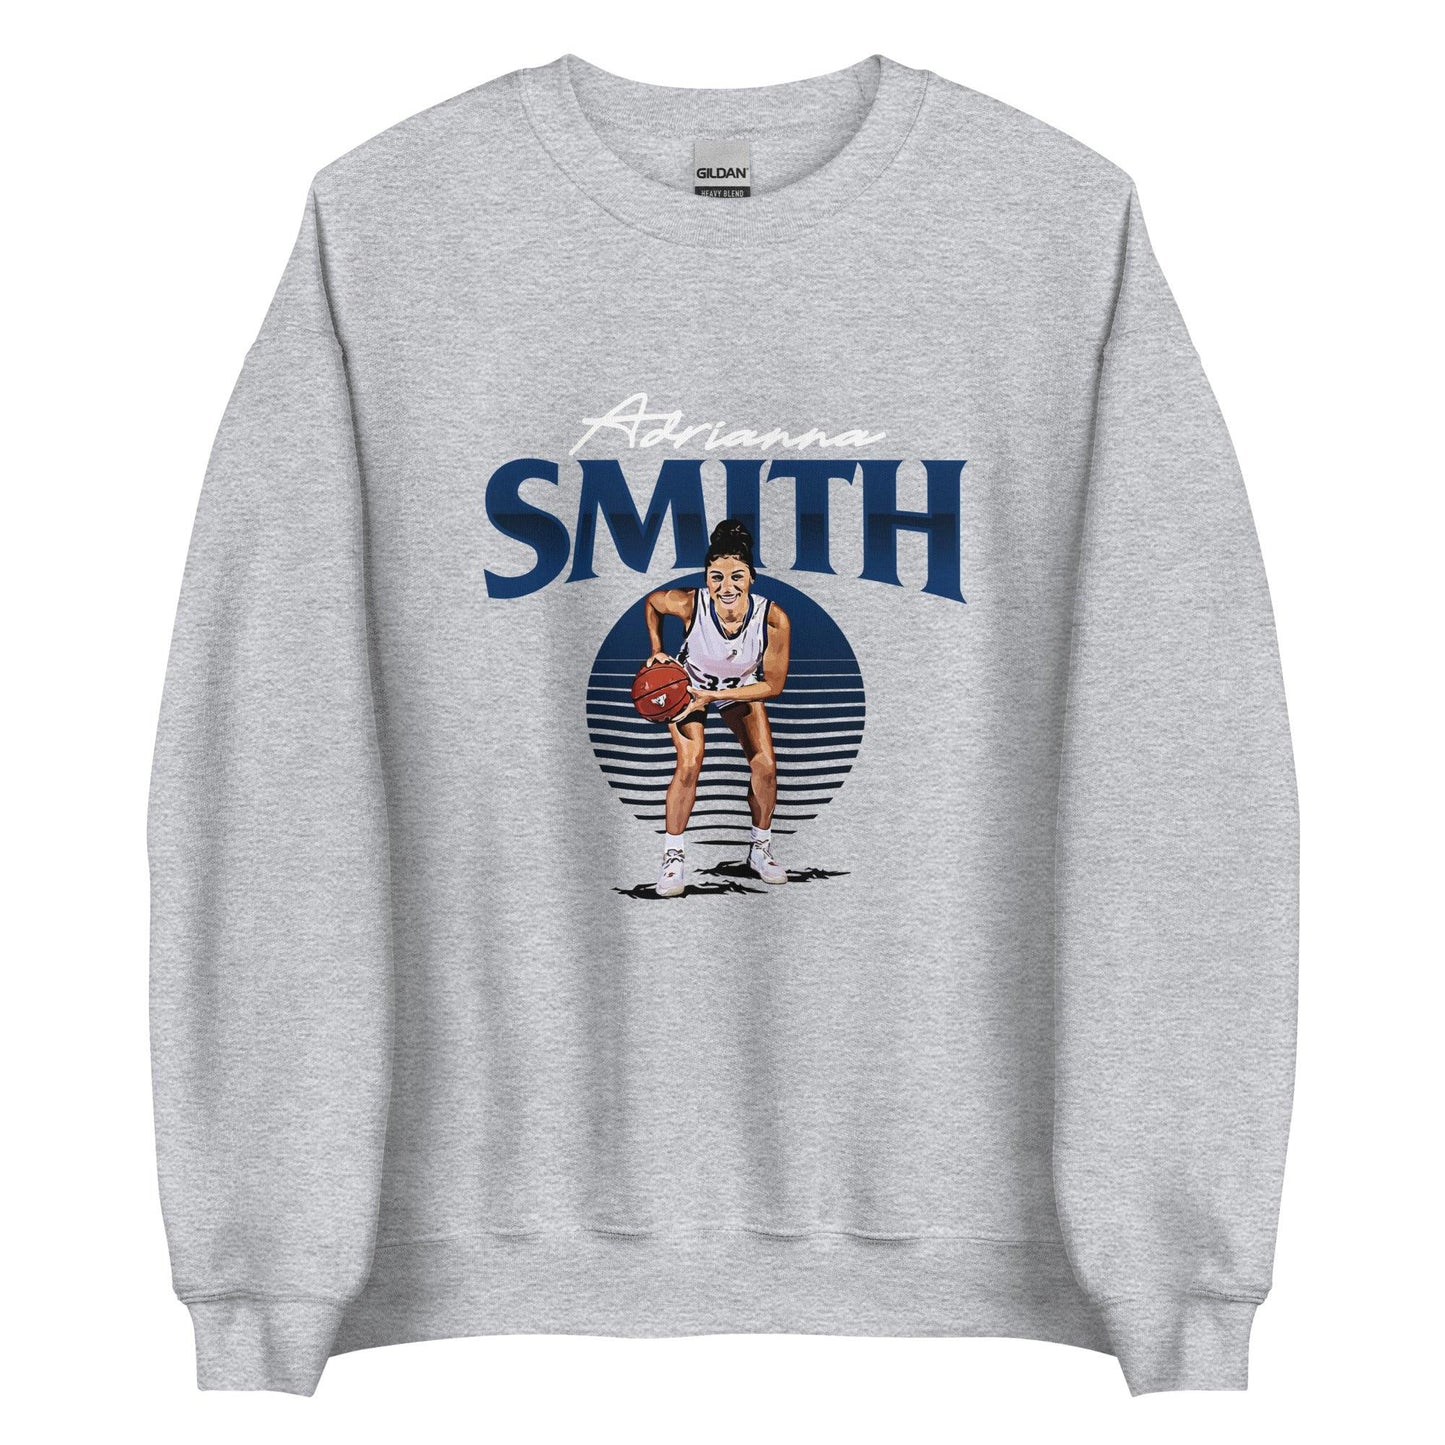 Adrianna Smith "Gameday" Sweatshirt - Fan Arch